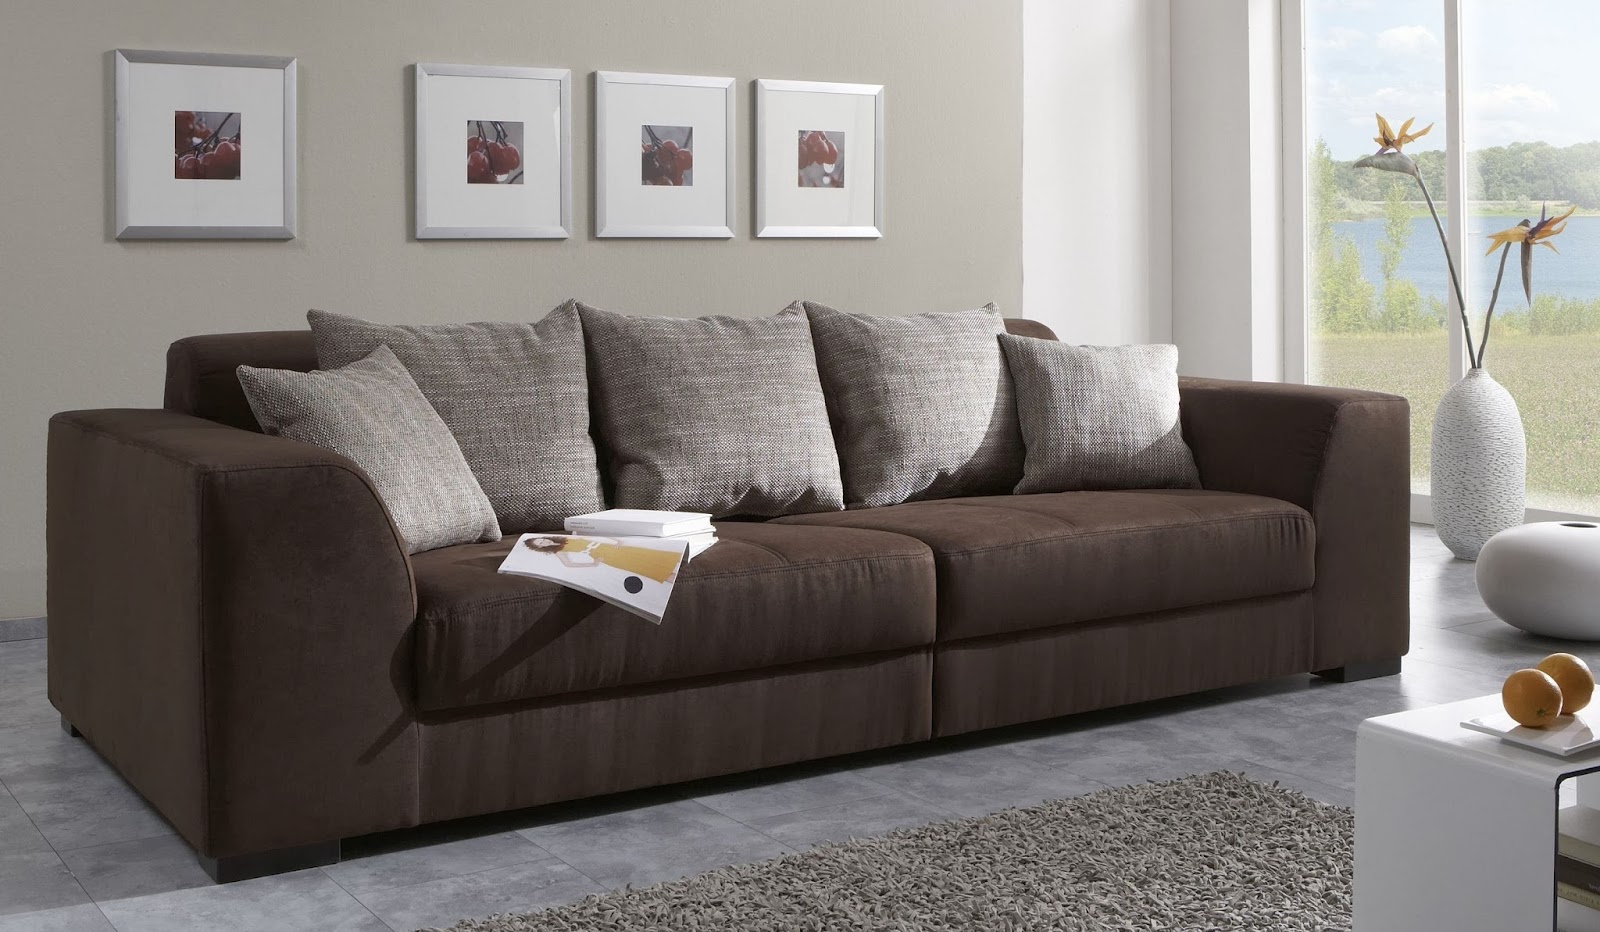  Interior Eksterior Rumah Minimalis  Tips Memilih Sofa 